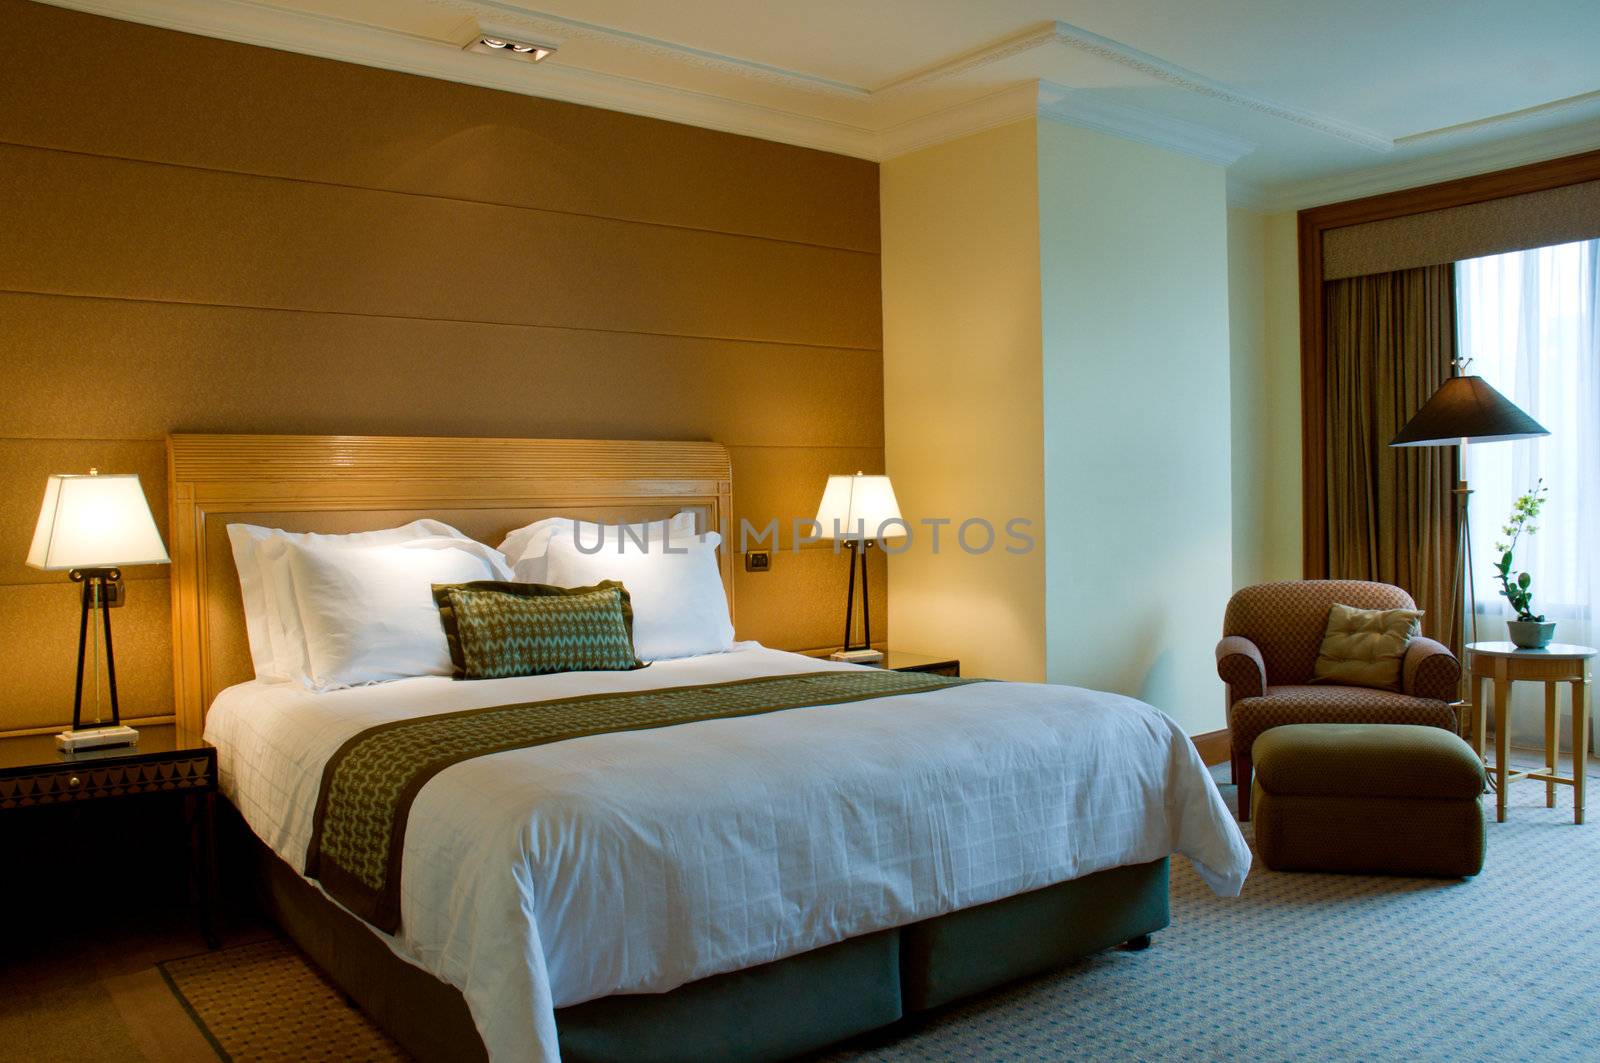 Bedroom of a elegant 5 star luxury hotel suite room 